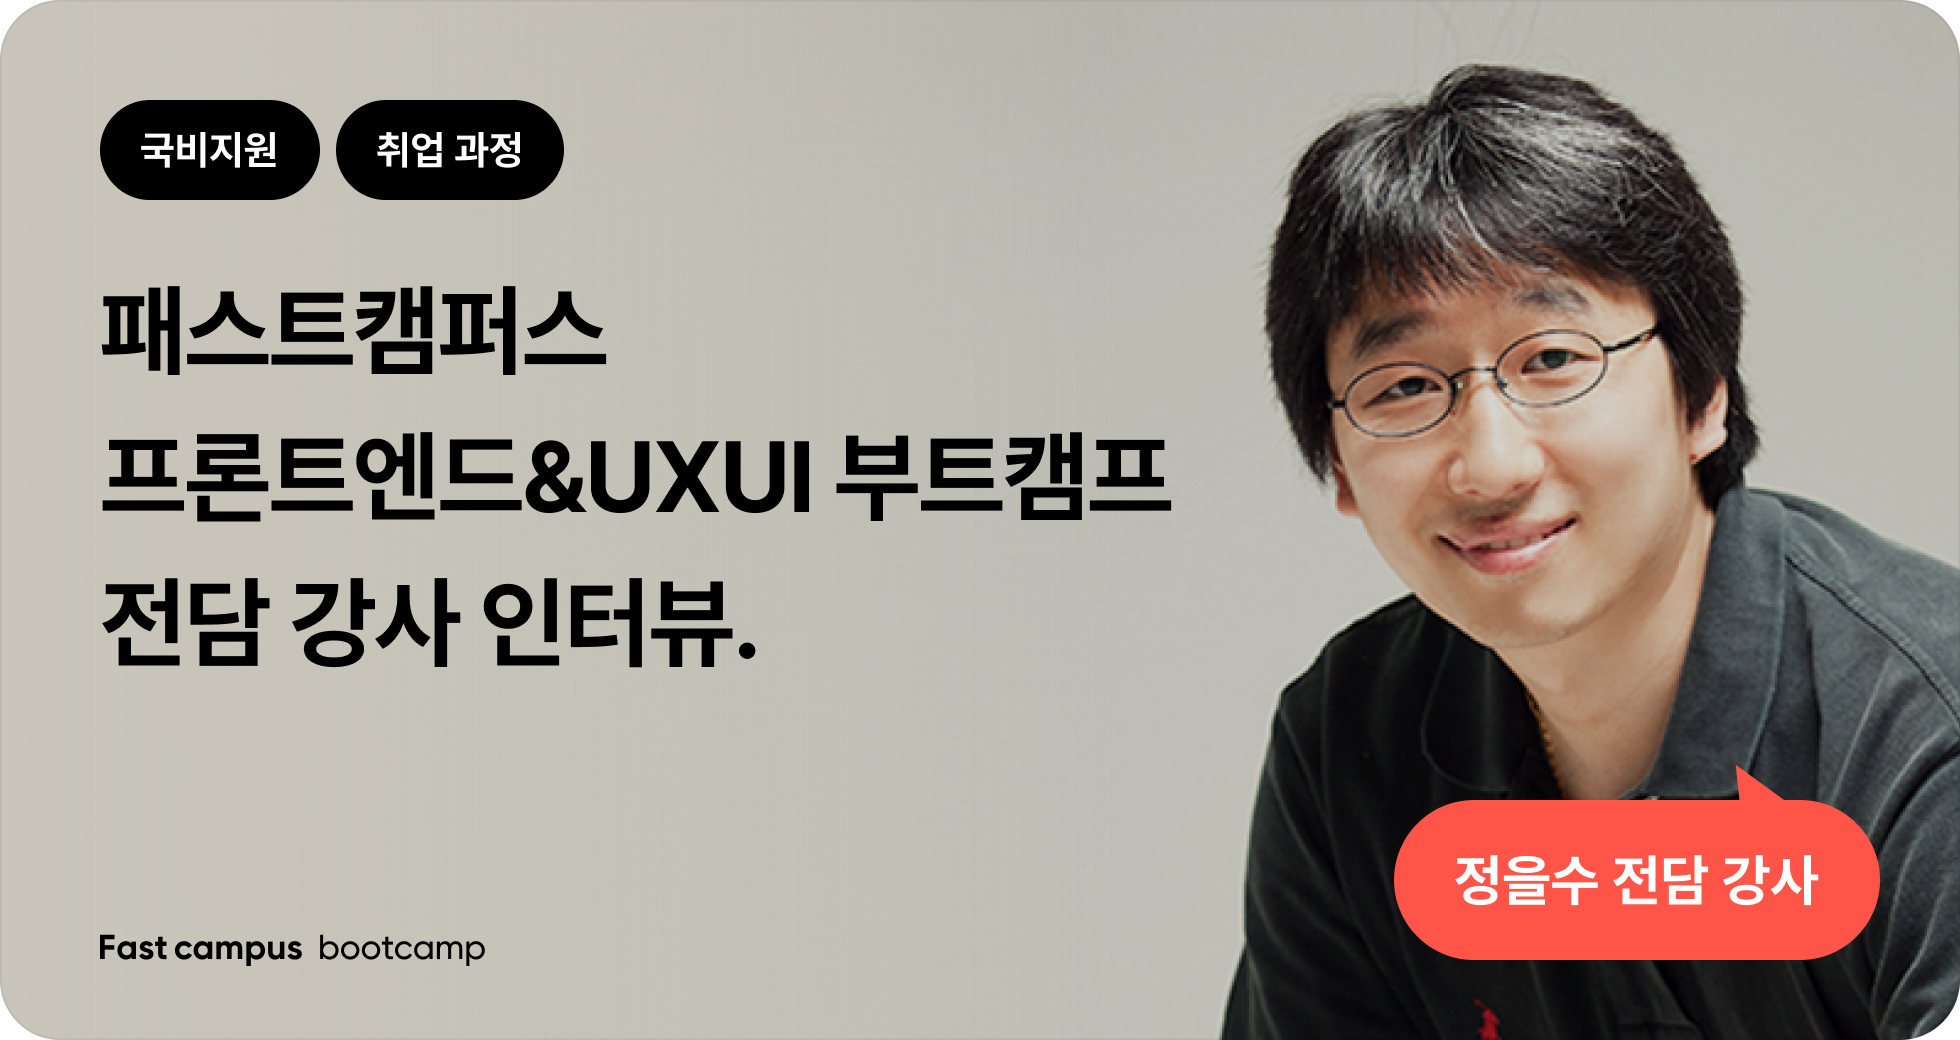 UXUI 국비지원 강사 정을수 인터뷰